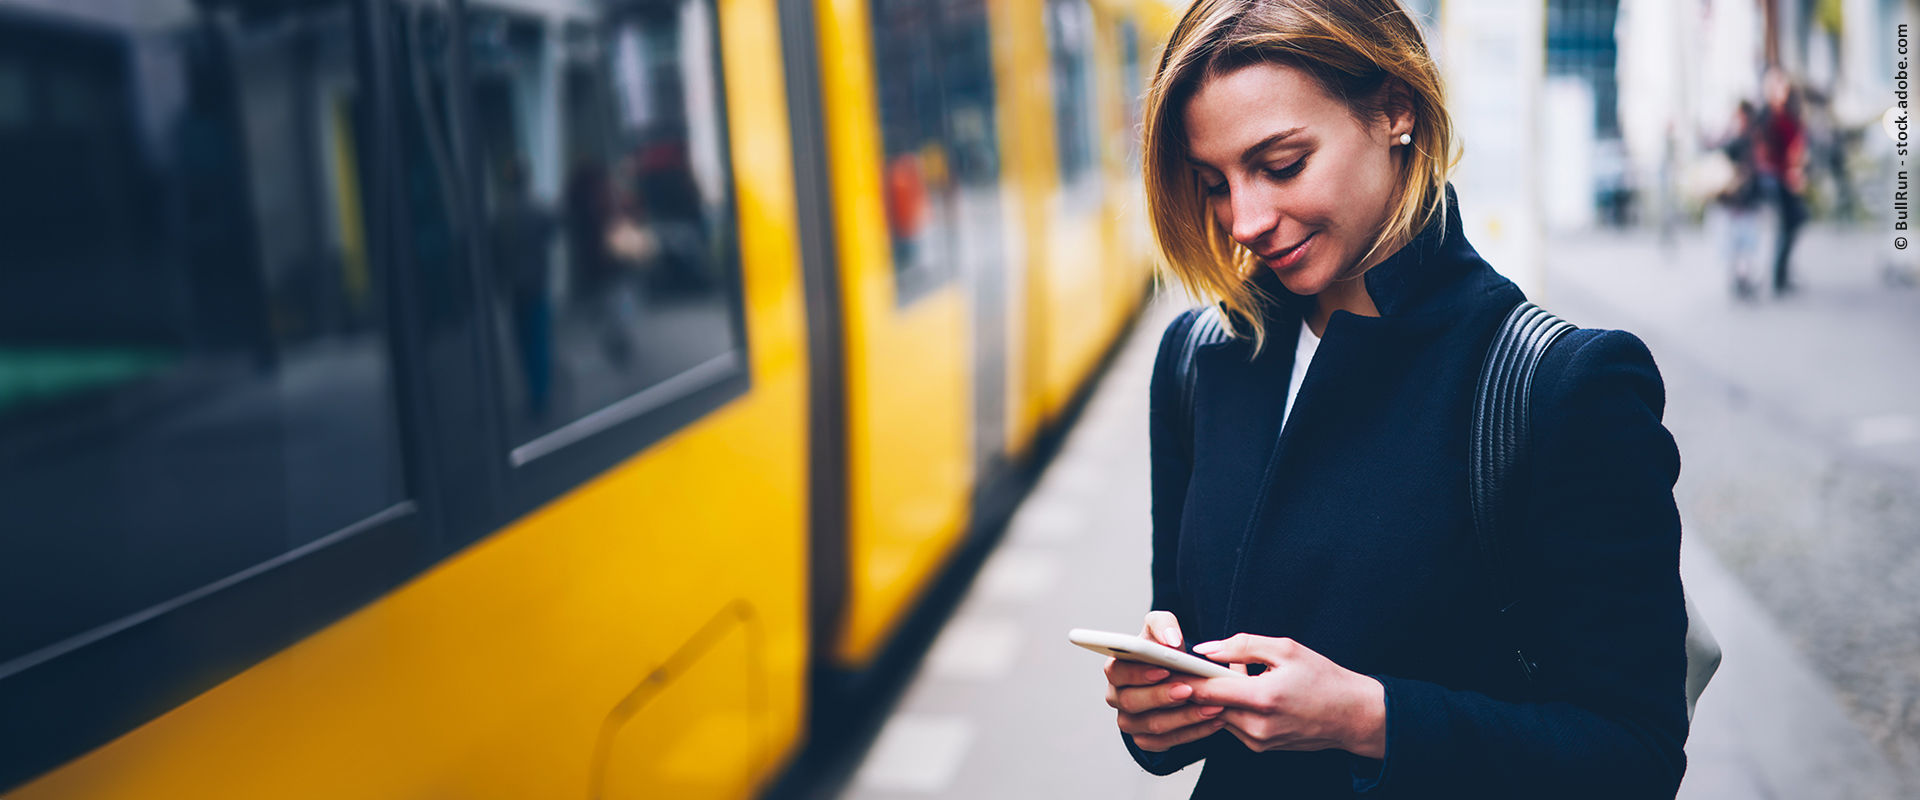 Eine Frau steht an einem Stadtbahn-Bahnsteig und schaut auf ihr Smartphone